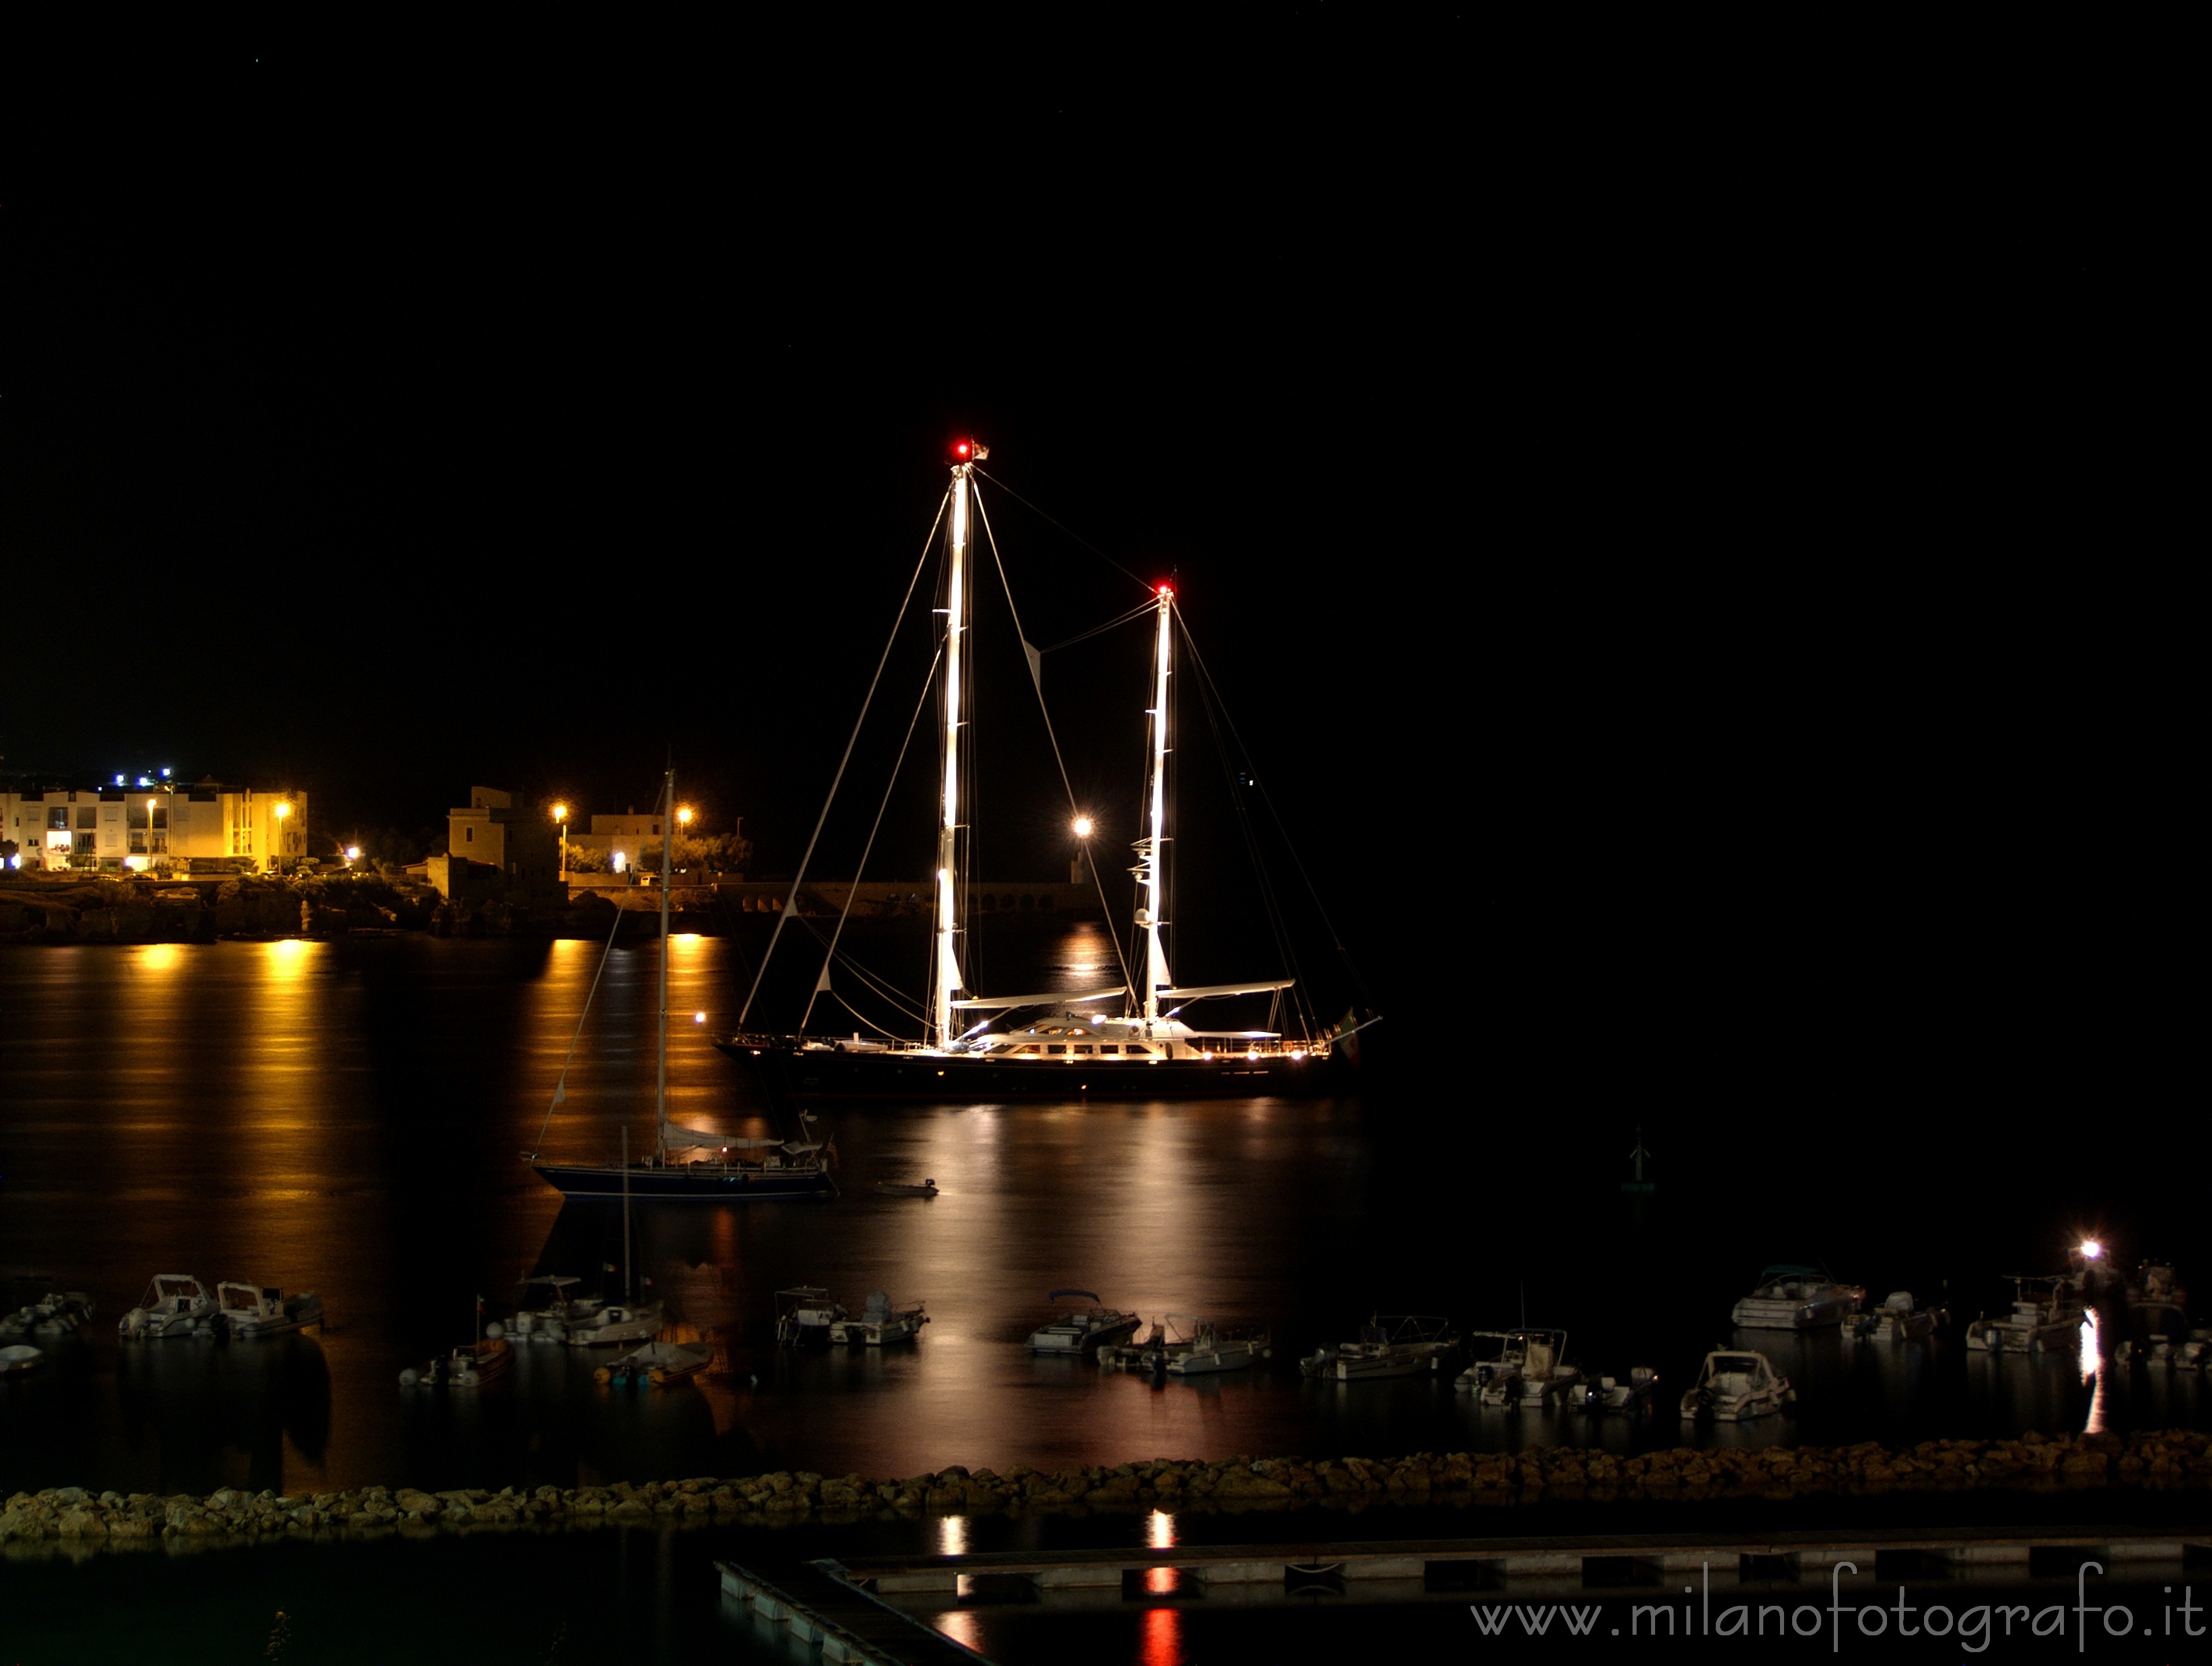 Otranto (Lecce, Italy): Ship in the harbour by night - Otranto (Lecce, Italy)